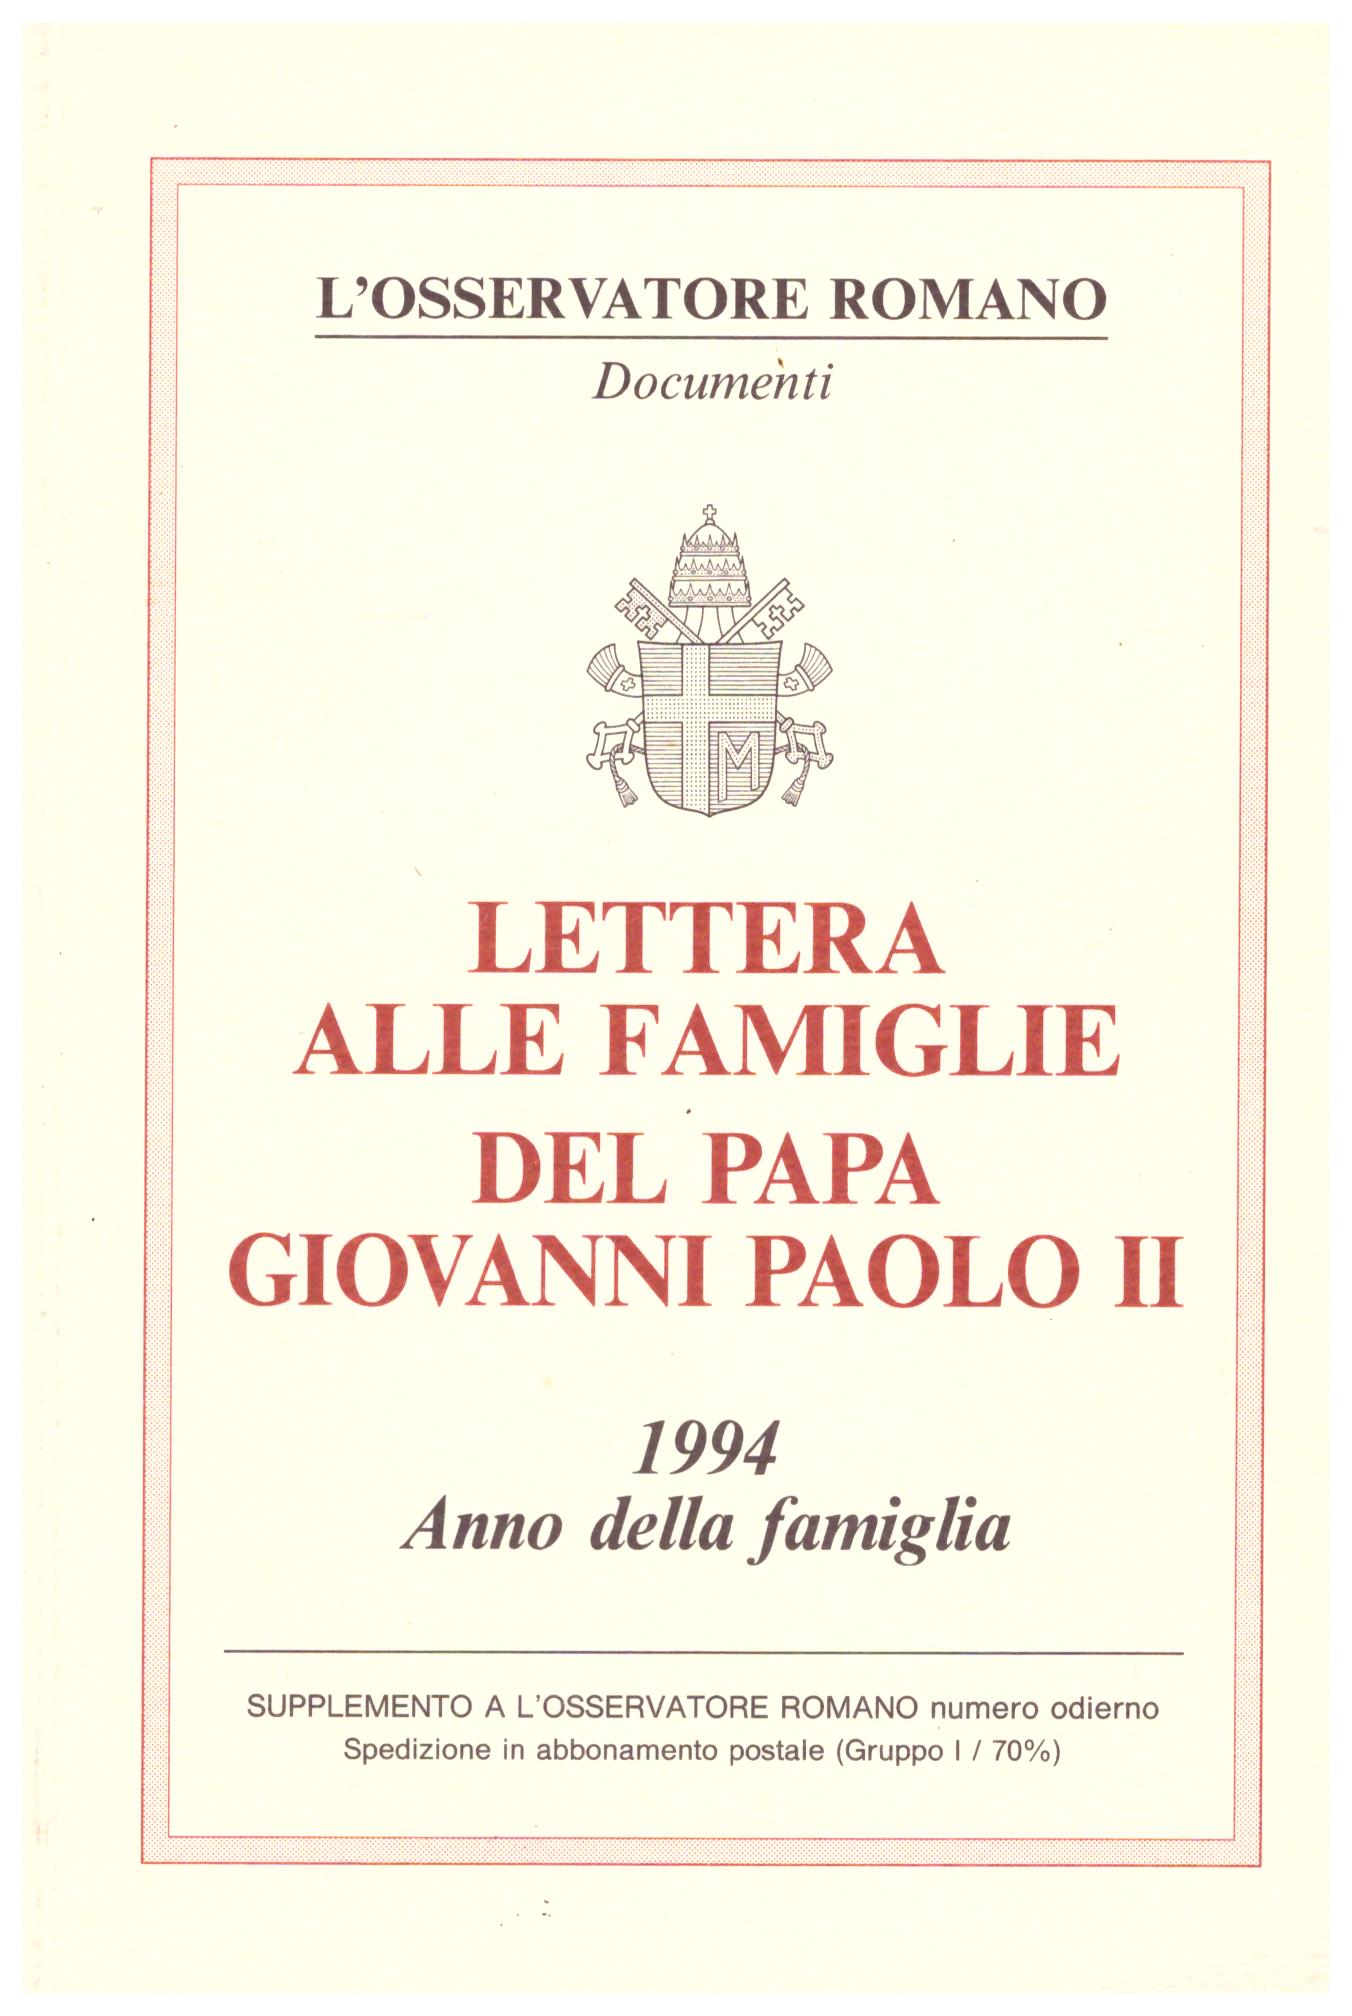 Titolo: Lettera alle famiglie    Autore: Giovanni Paolo II    Editore: tipografia vaticana